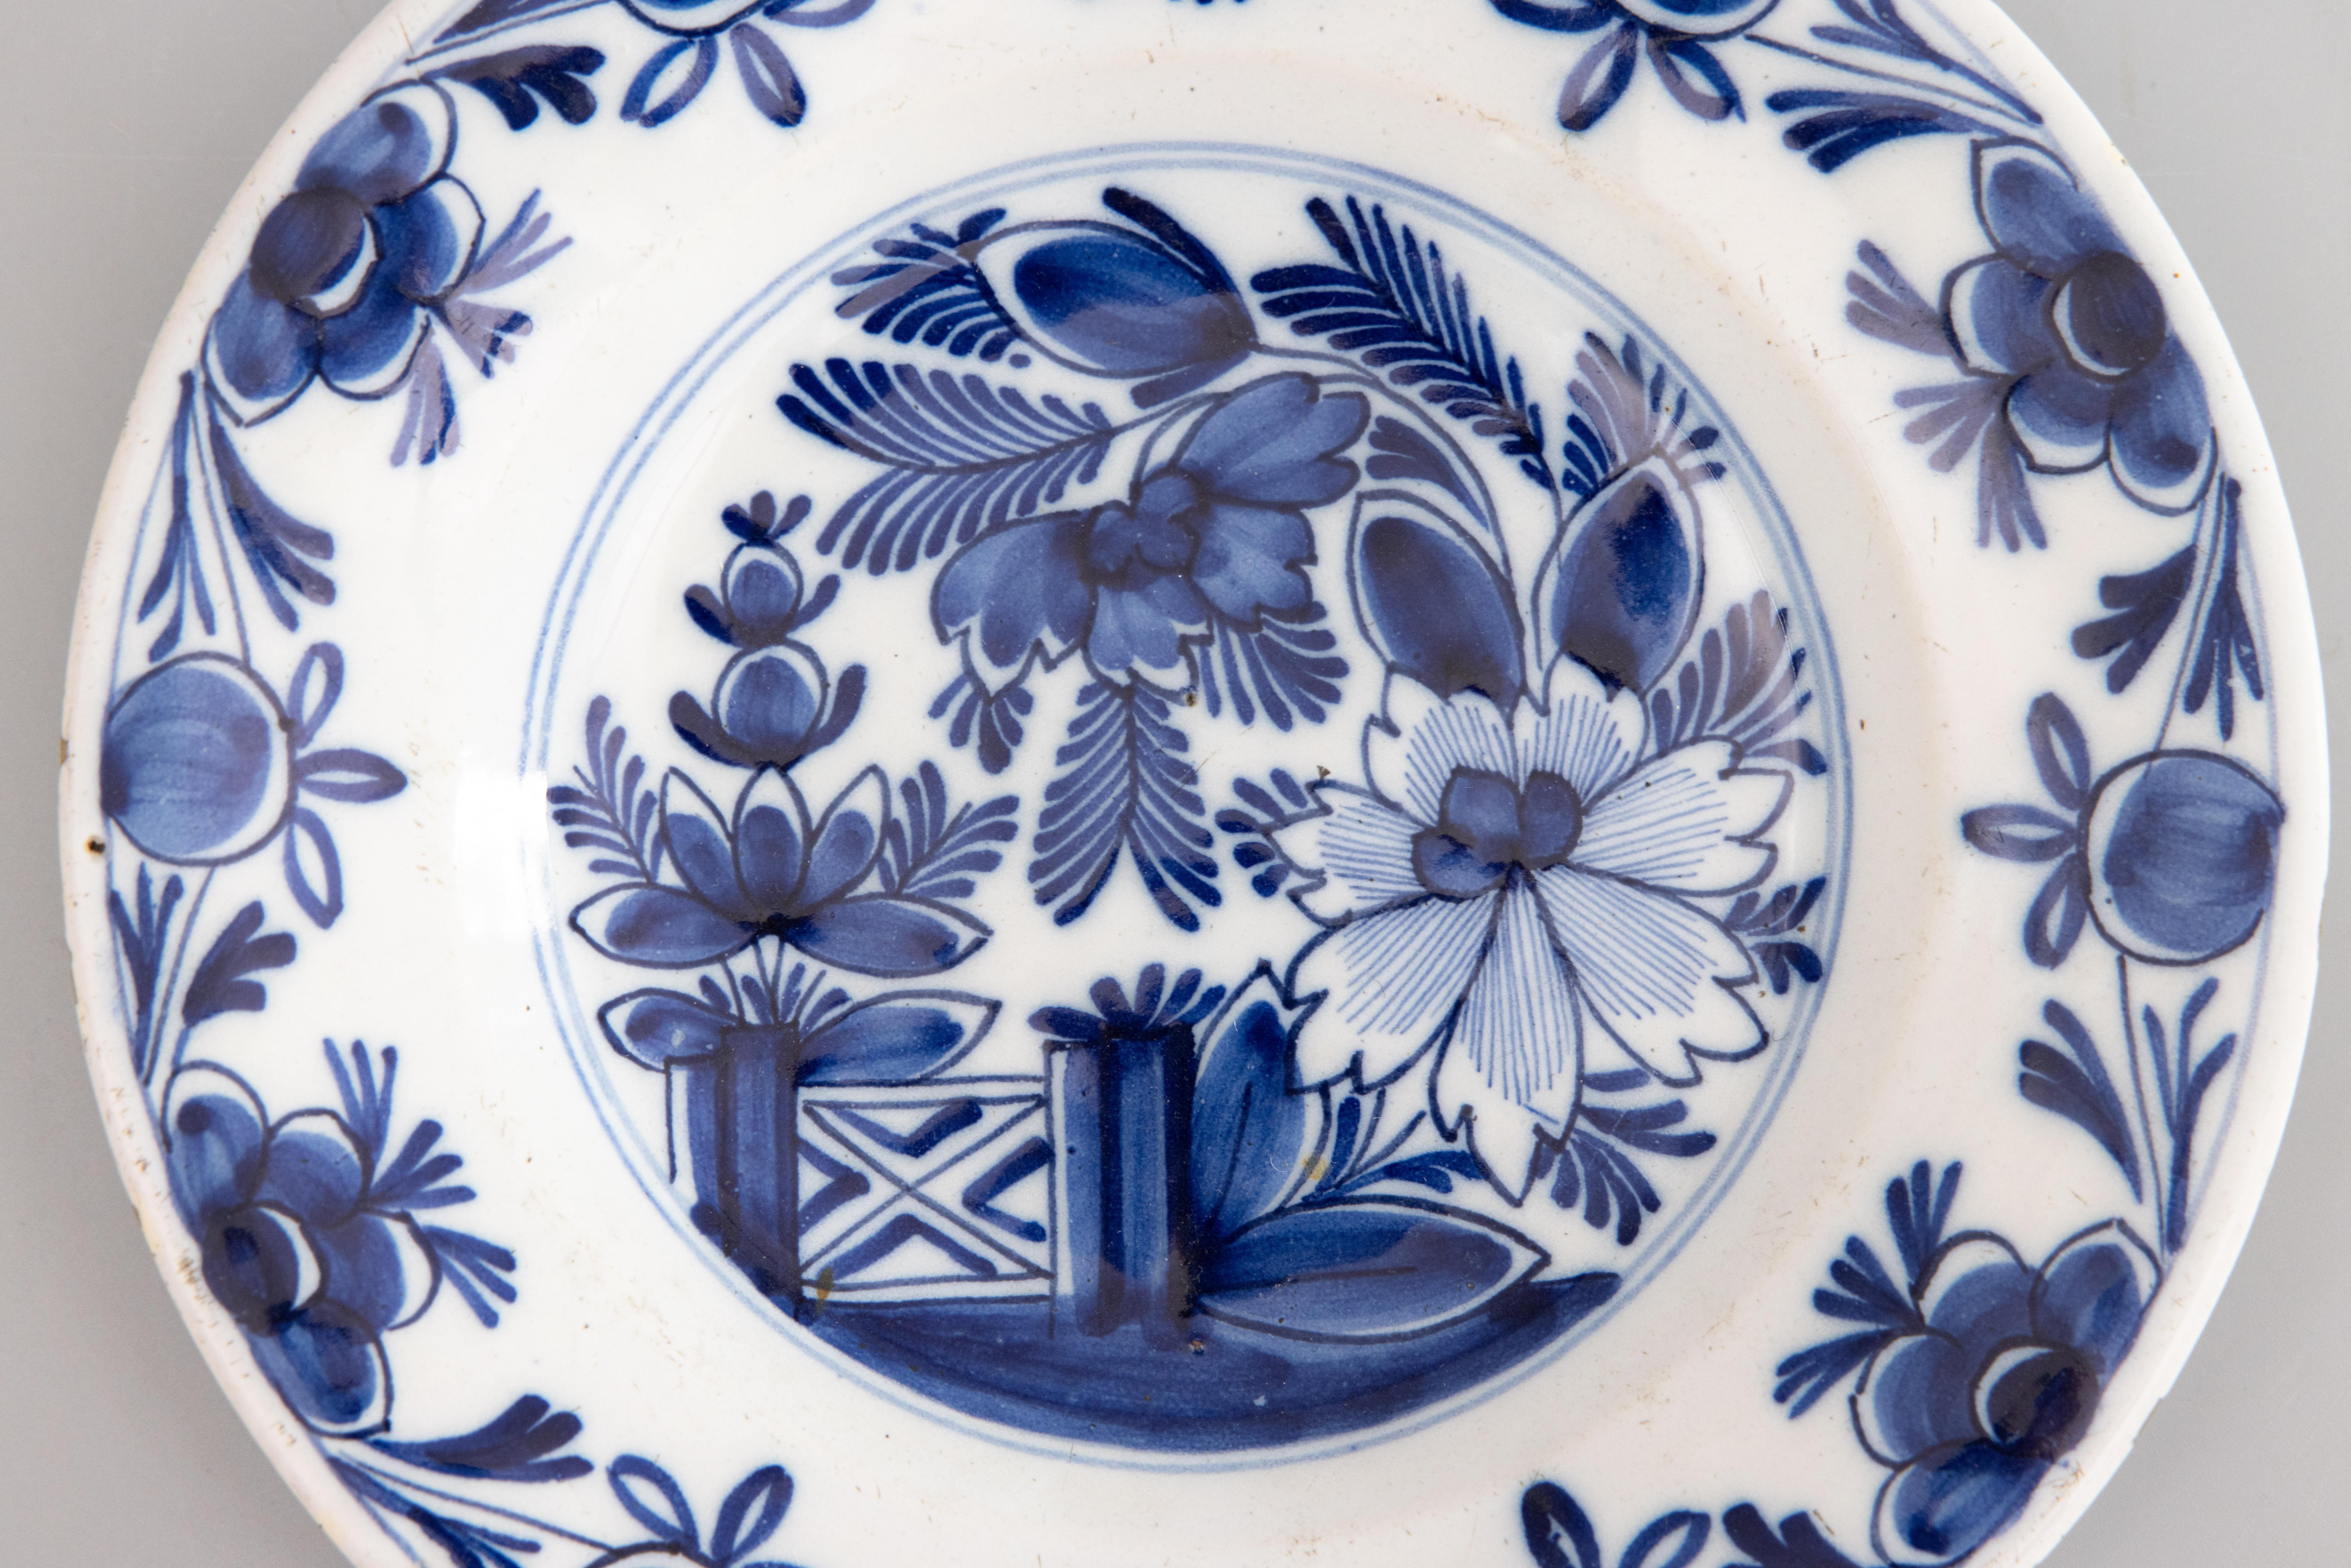 Ein schöner antiker Teller aus Delft mit einem auffälligen Blumenmuster und einem Gartentor in der Mitte, umgeben von einem Blumenmotiv am Rand. Alle handbemalt in leuchtendem Kobaltblau.

ABMESSUNGEN
9.25ʺW × 1.38ʺD × 9.25ʺH